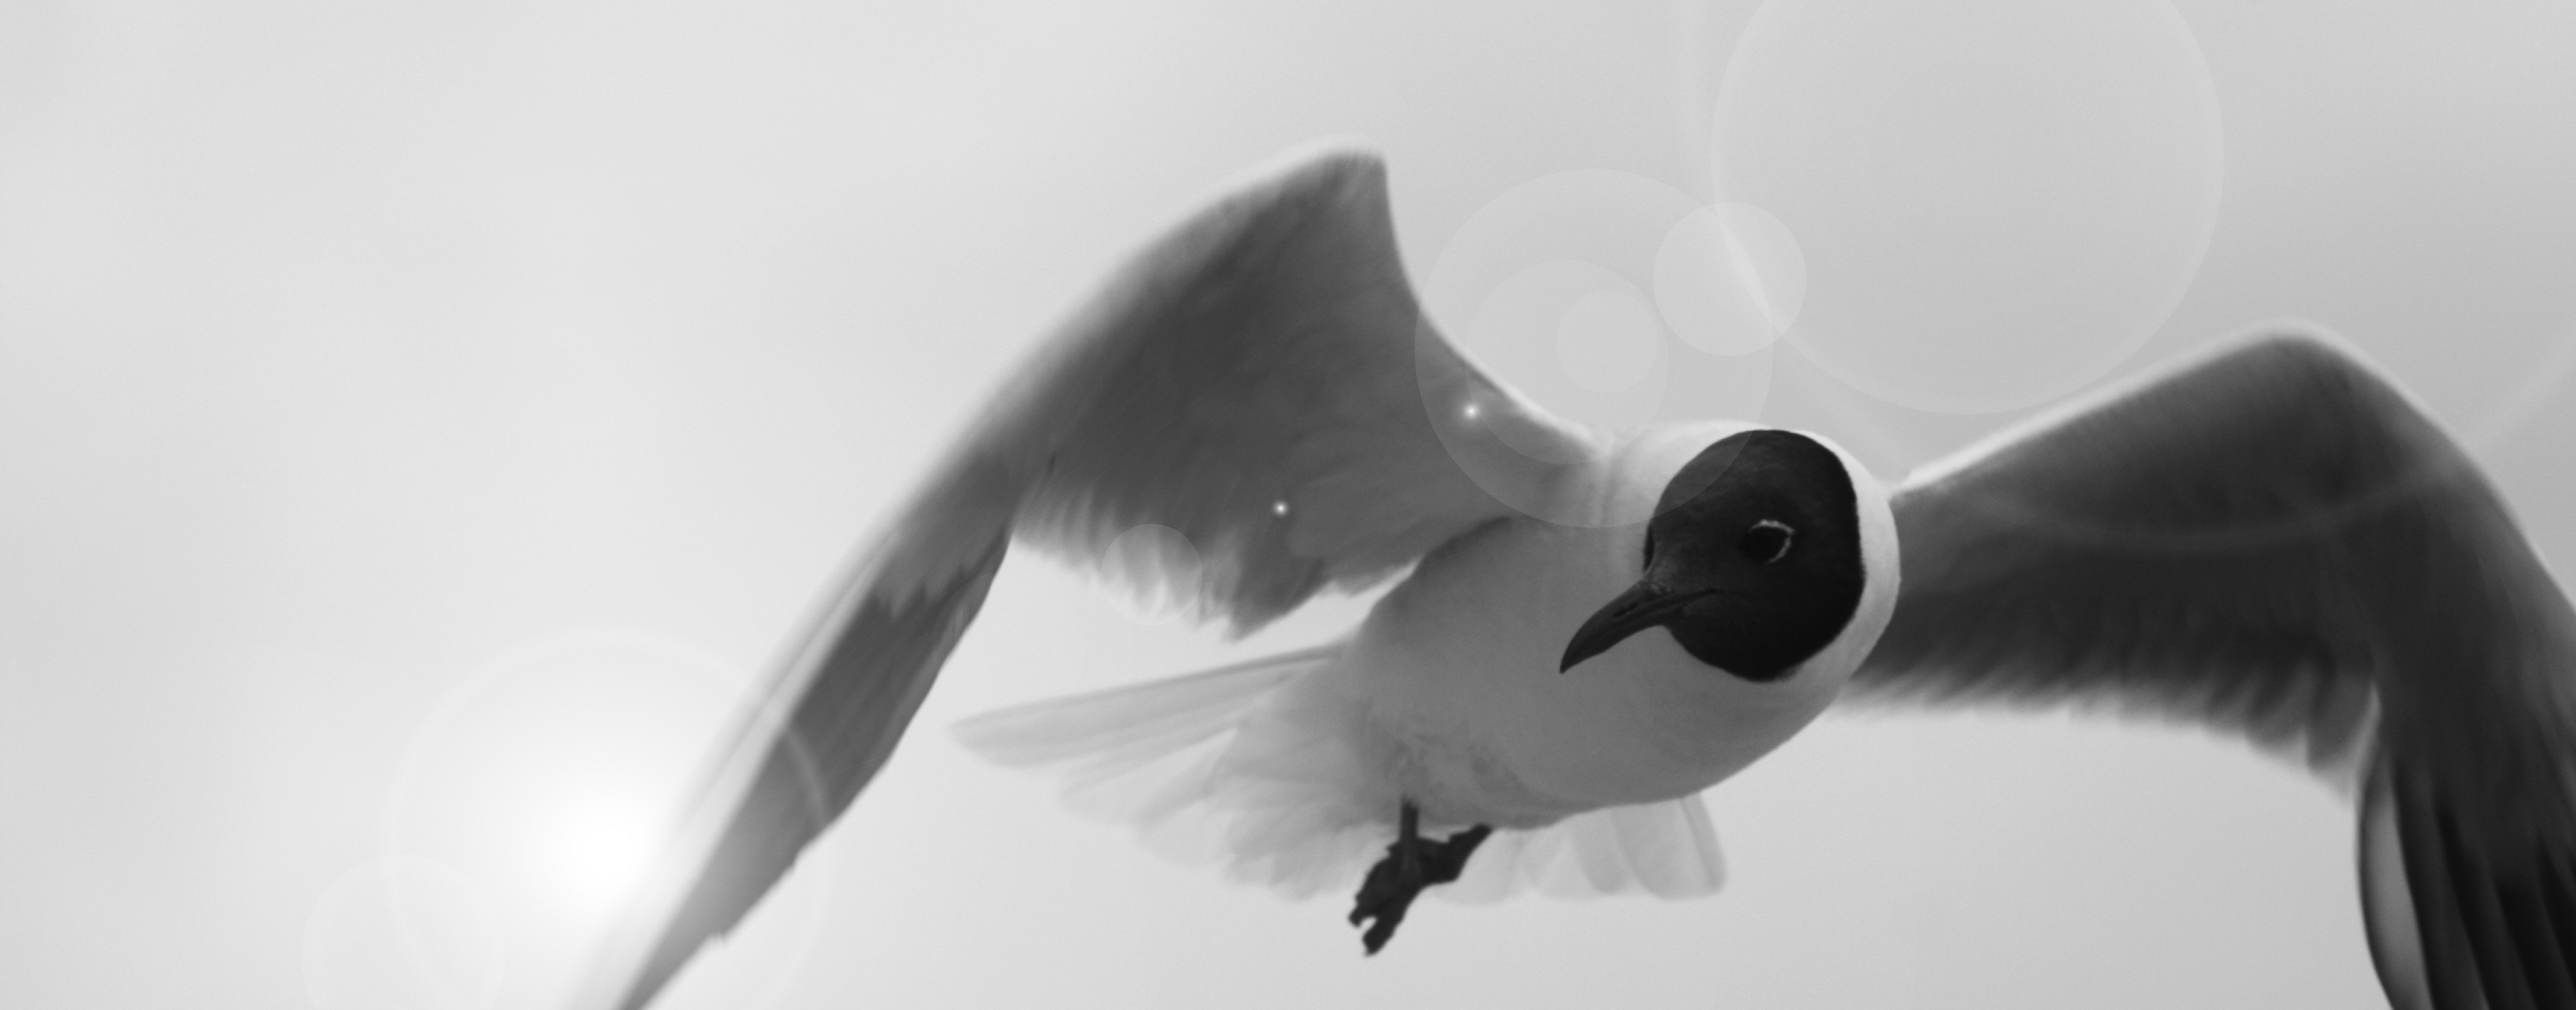 black white and gray bird